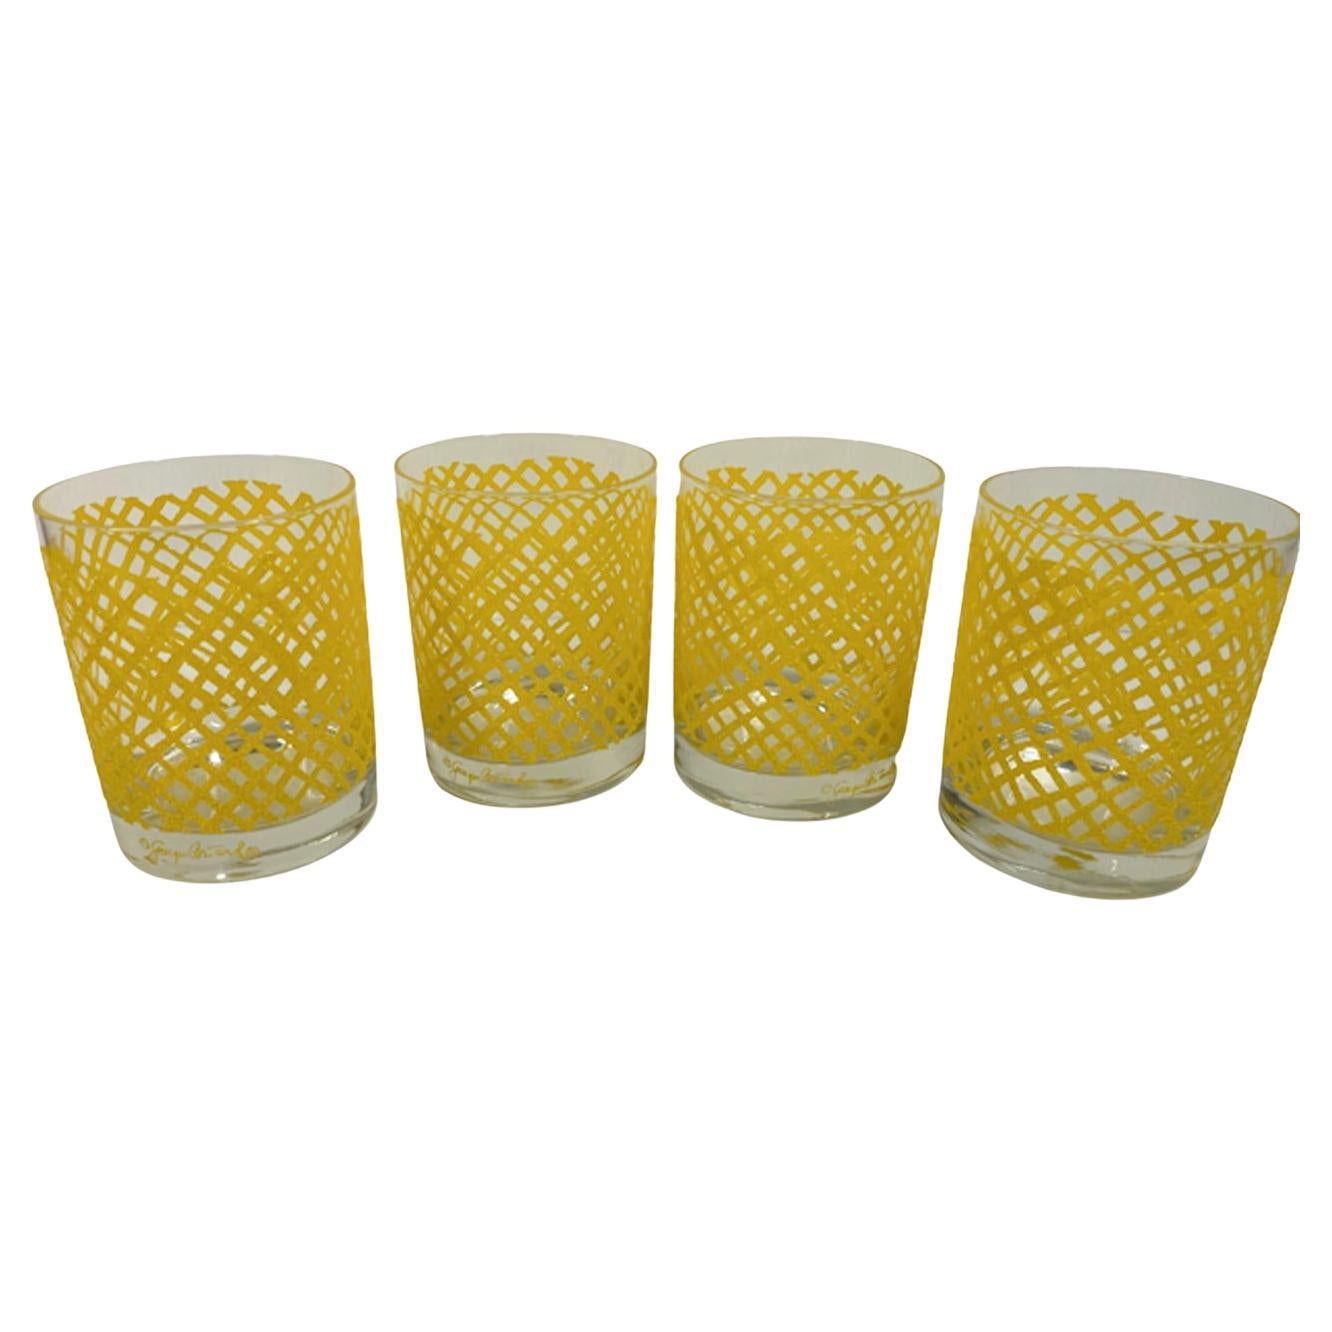 Ensemble de 4 verres vintage Georges Briard Rocks avec motif de filet jaune en relief